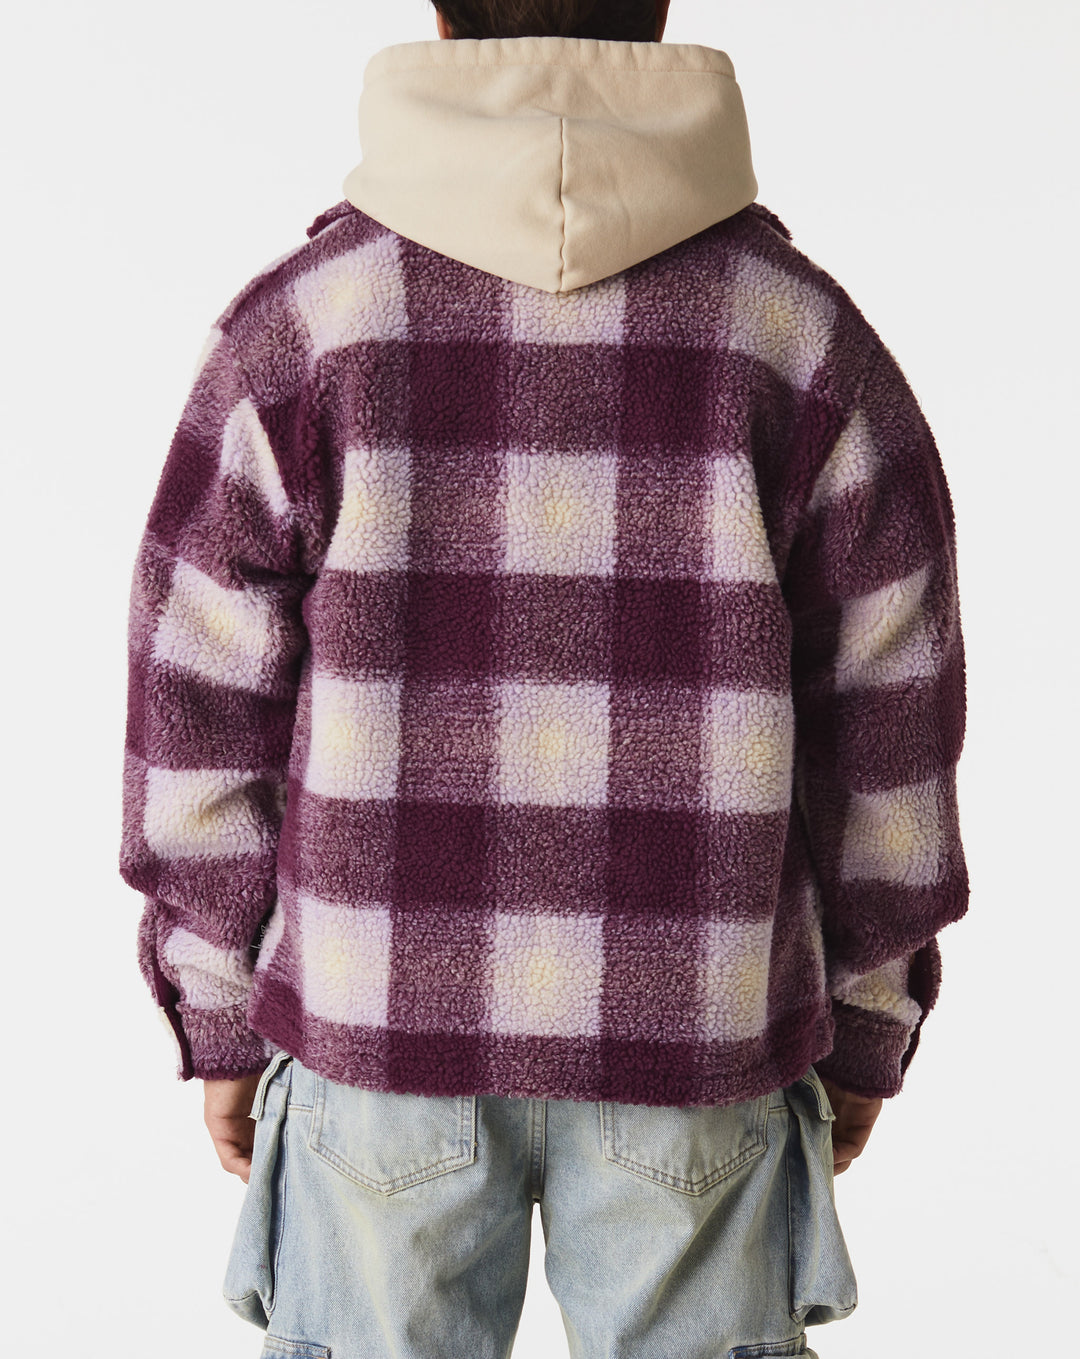 Stüssy Sweaters & Sweatshirts  - Cheap Urlfreeze Jordan outlet